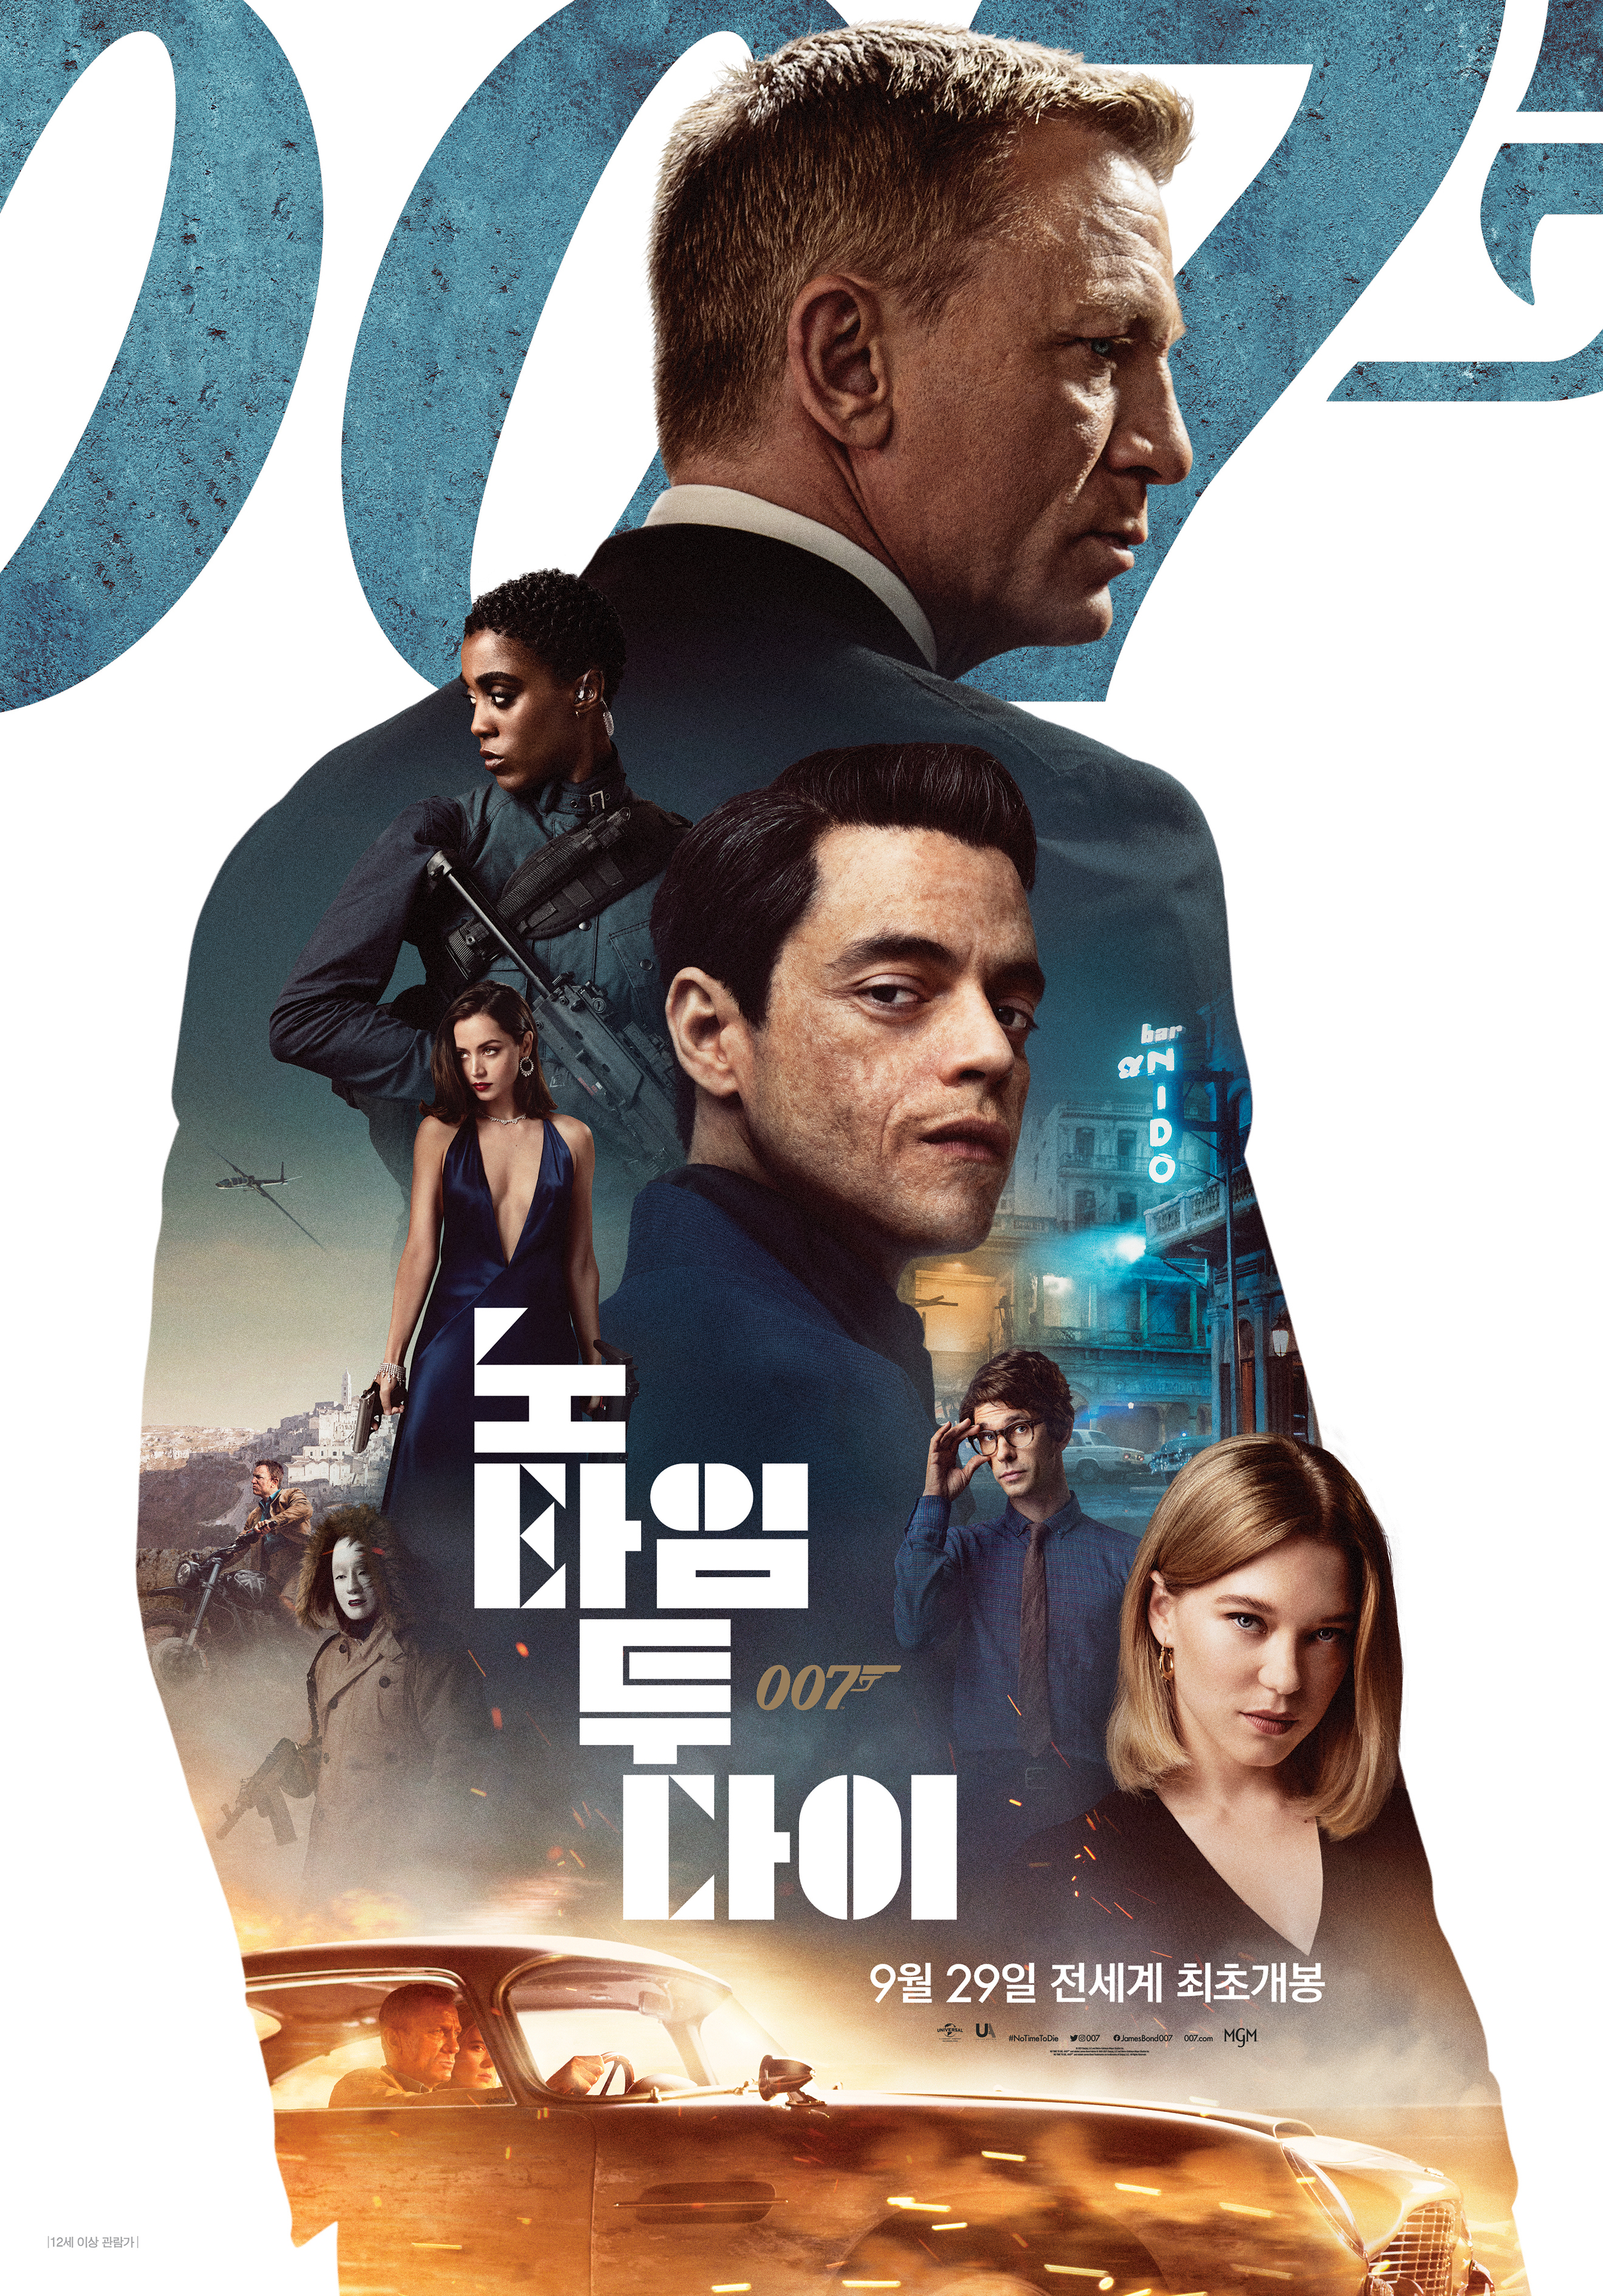 '007 노 타임 투 다이' 공식 러닝타임 163분